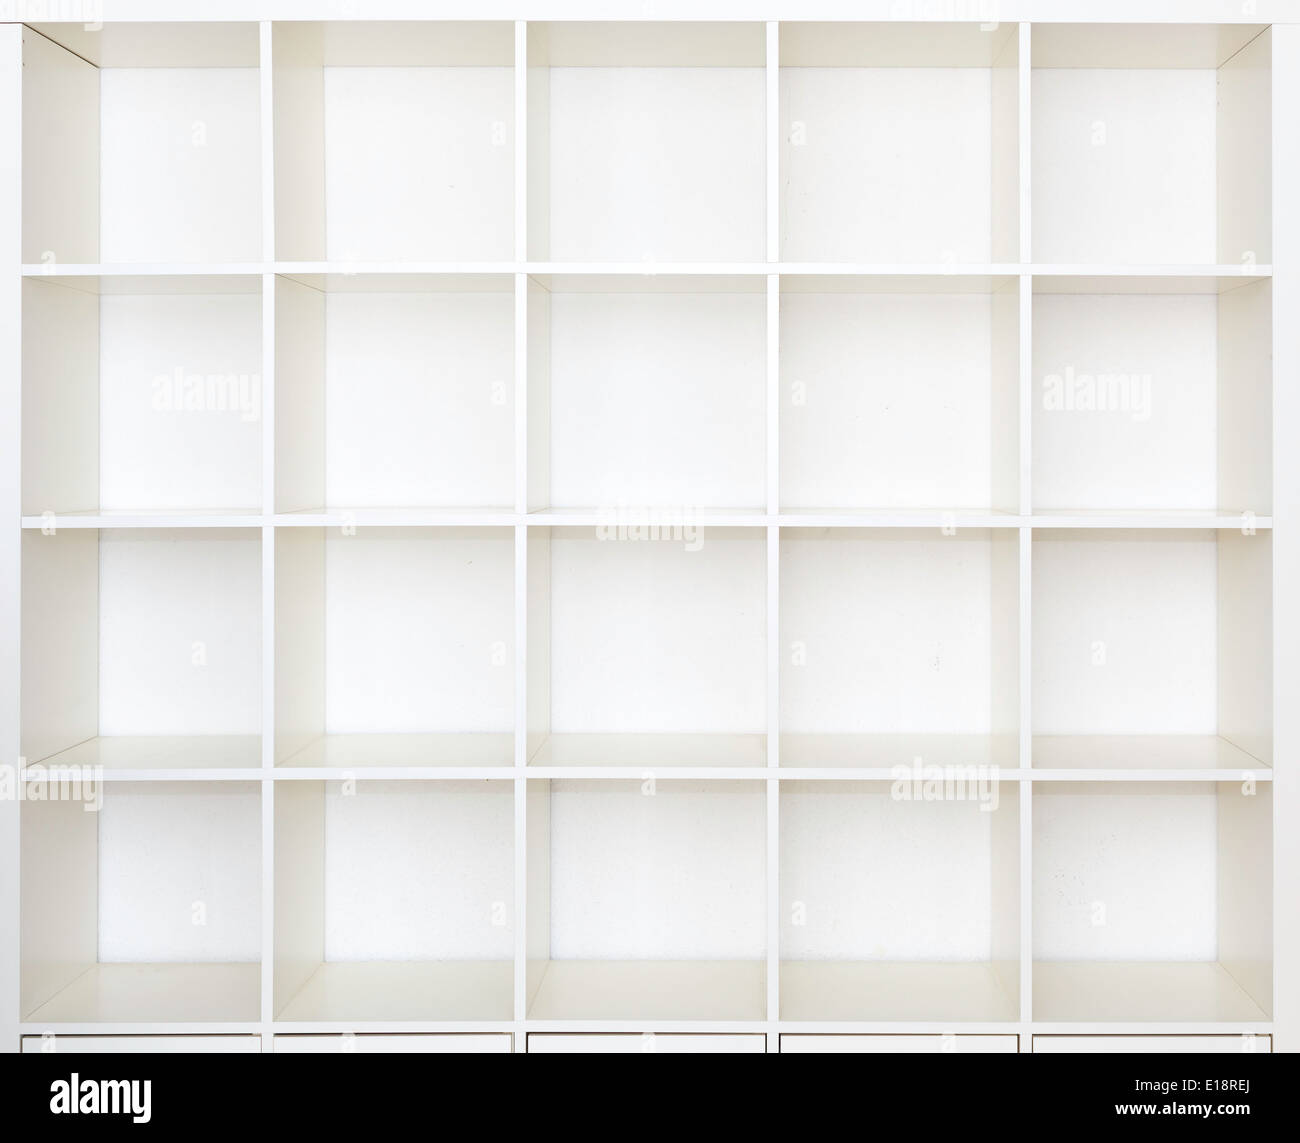 Los estantes vacíos, biblioteca de estantería en blanco Foto de stock